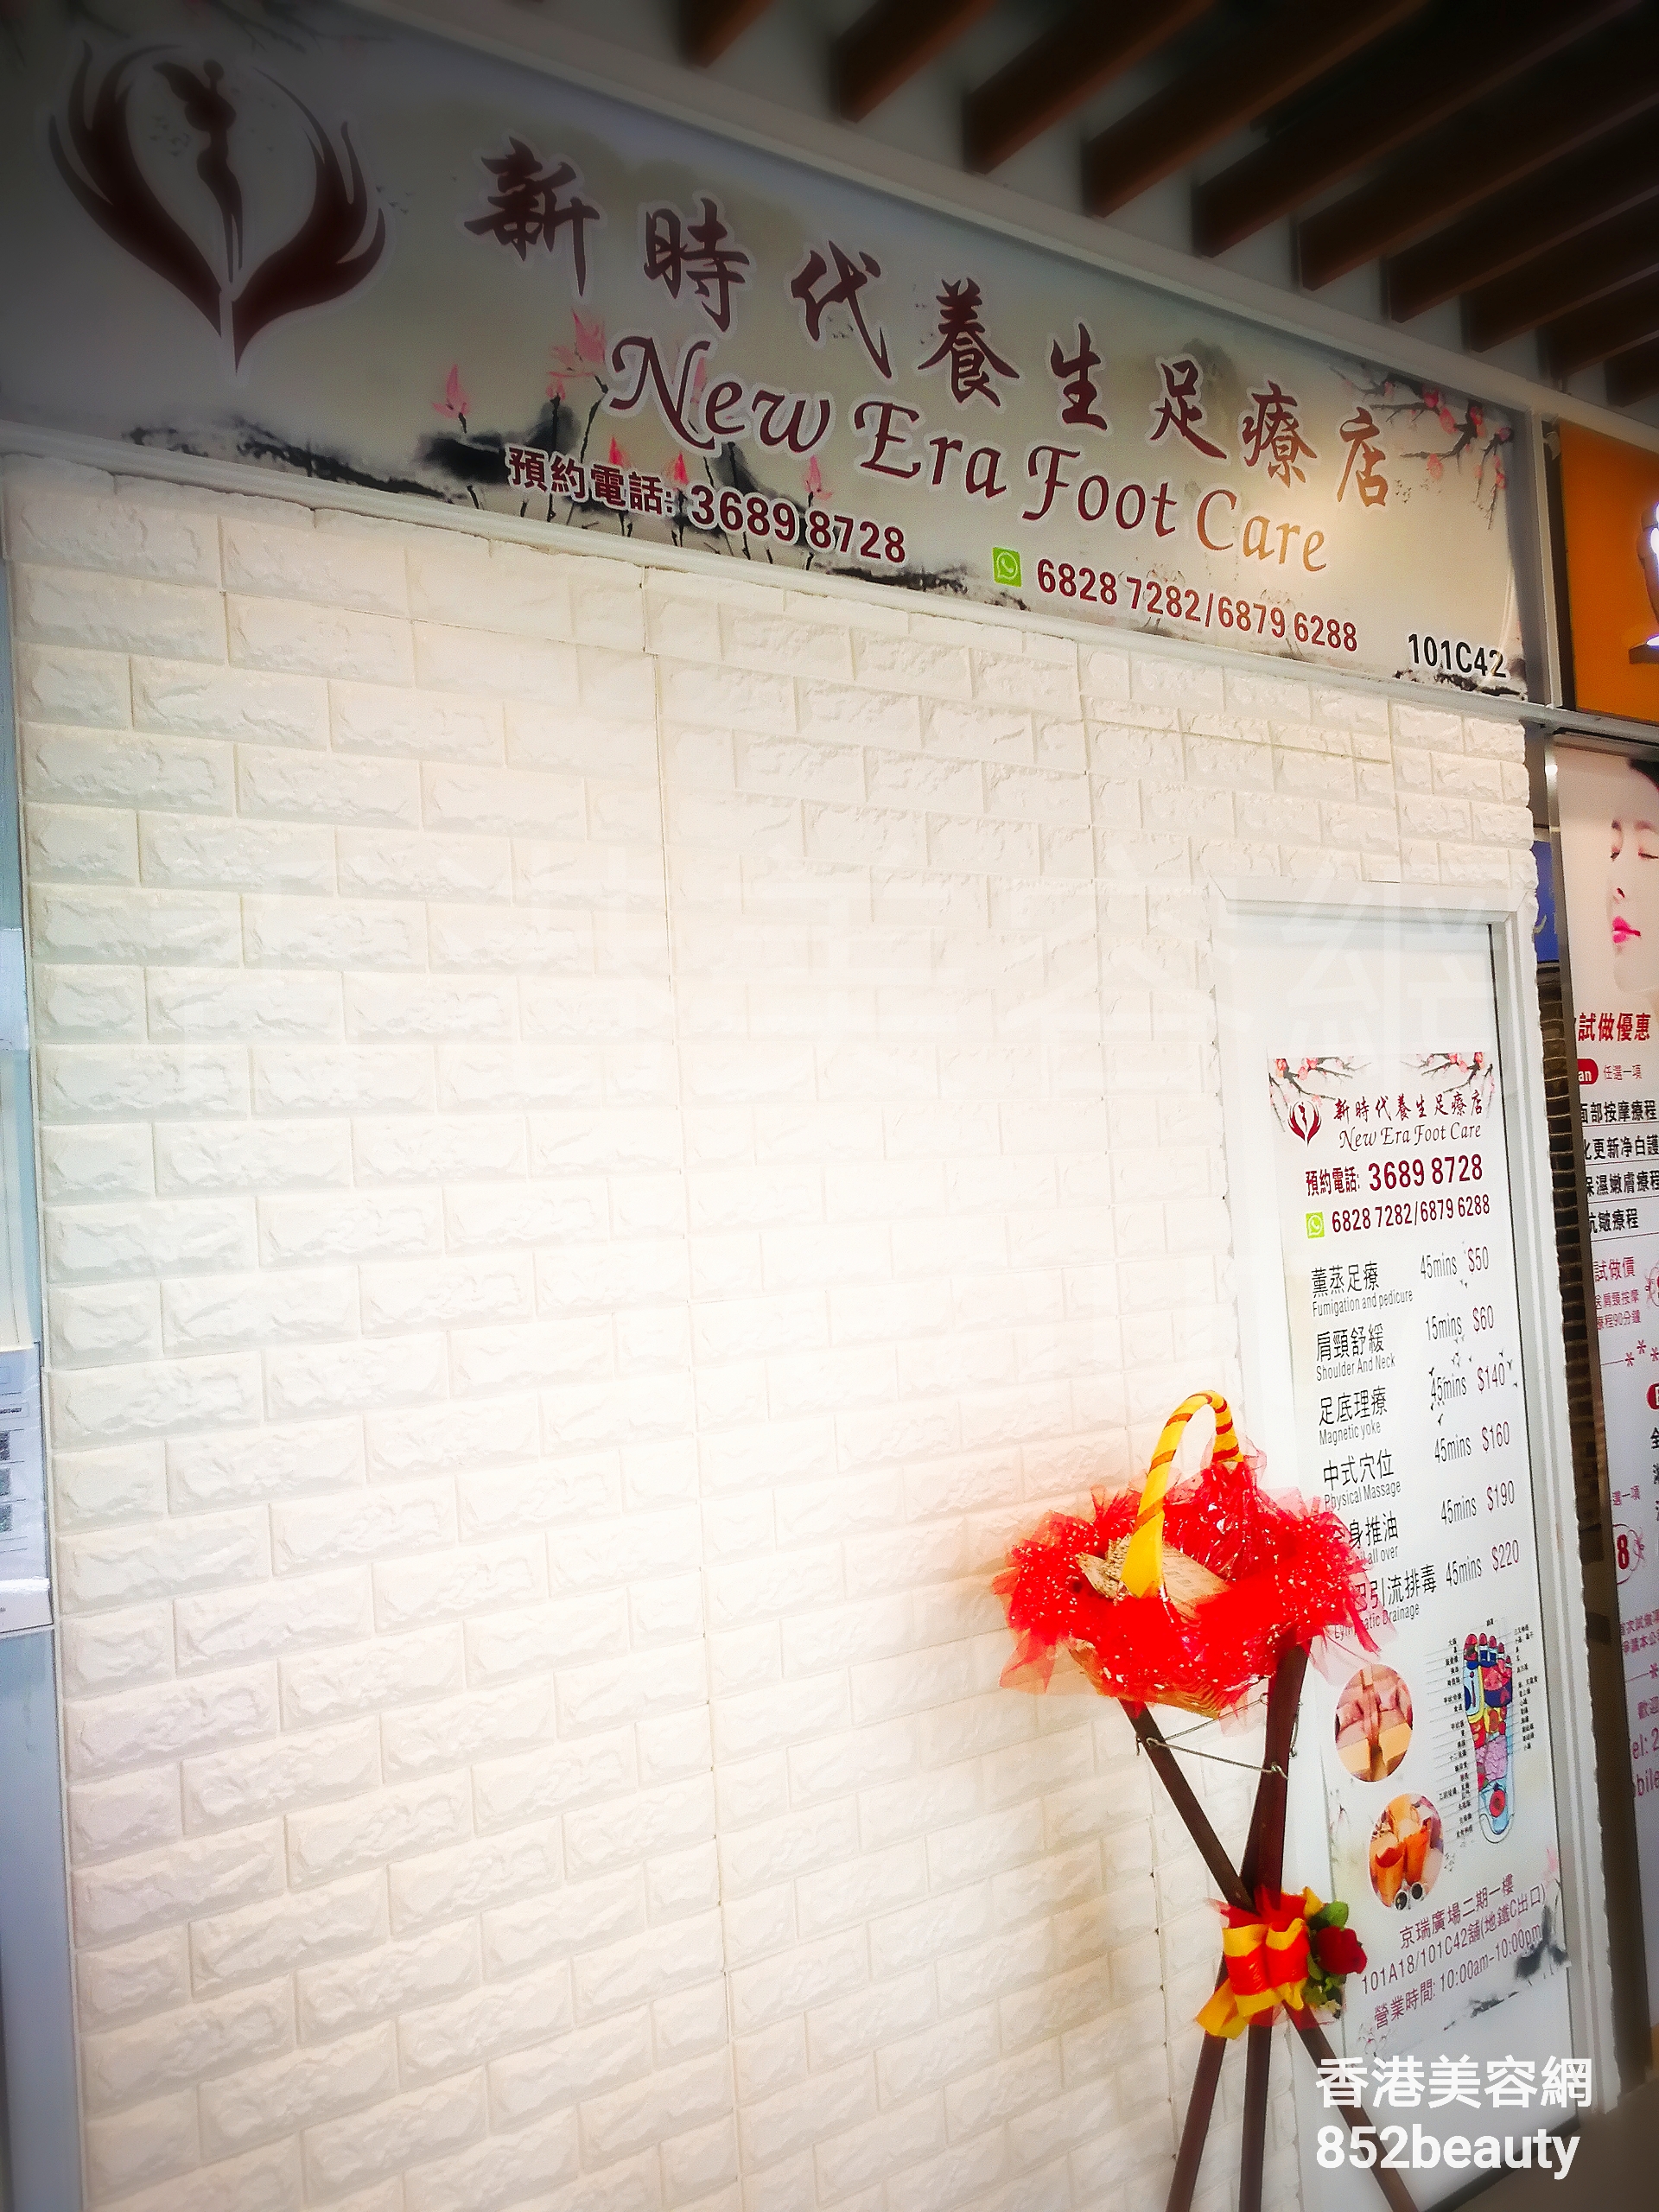 香港美容網 Hong Kong Beauty Salon 美容院 / 美容師: 新時代養生足療店